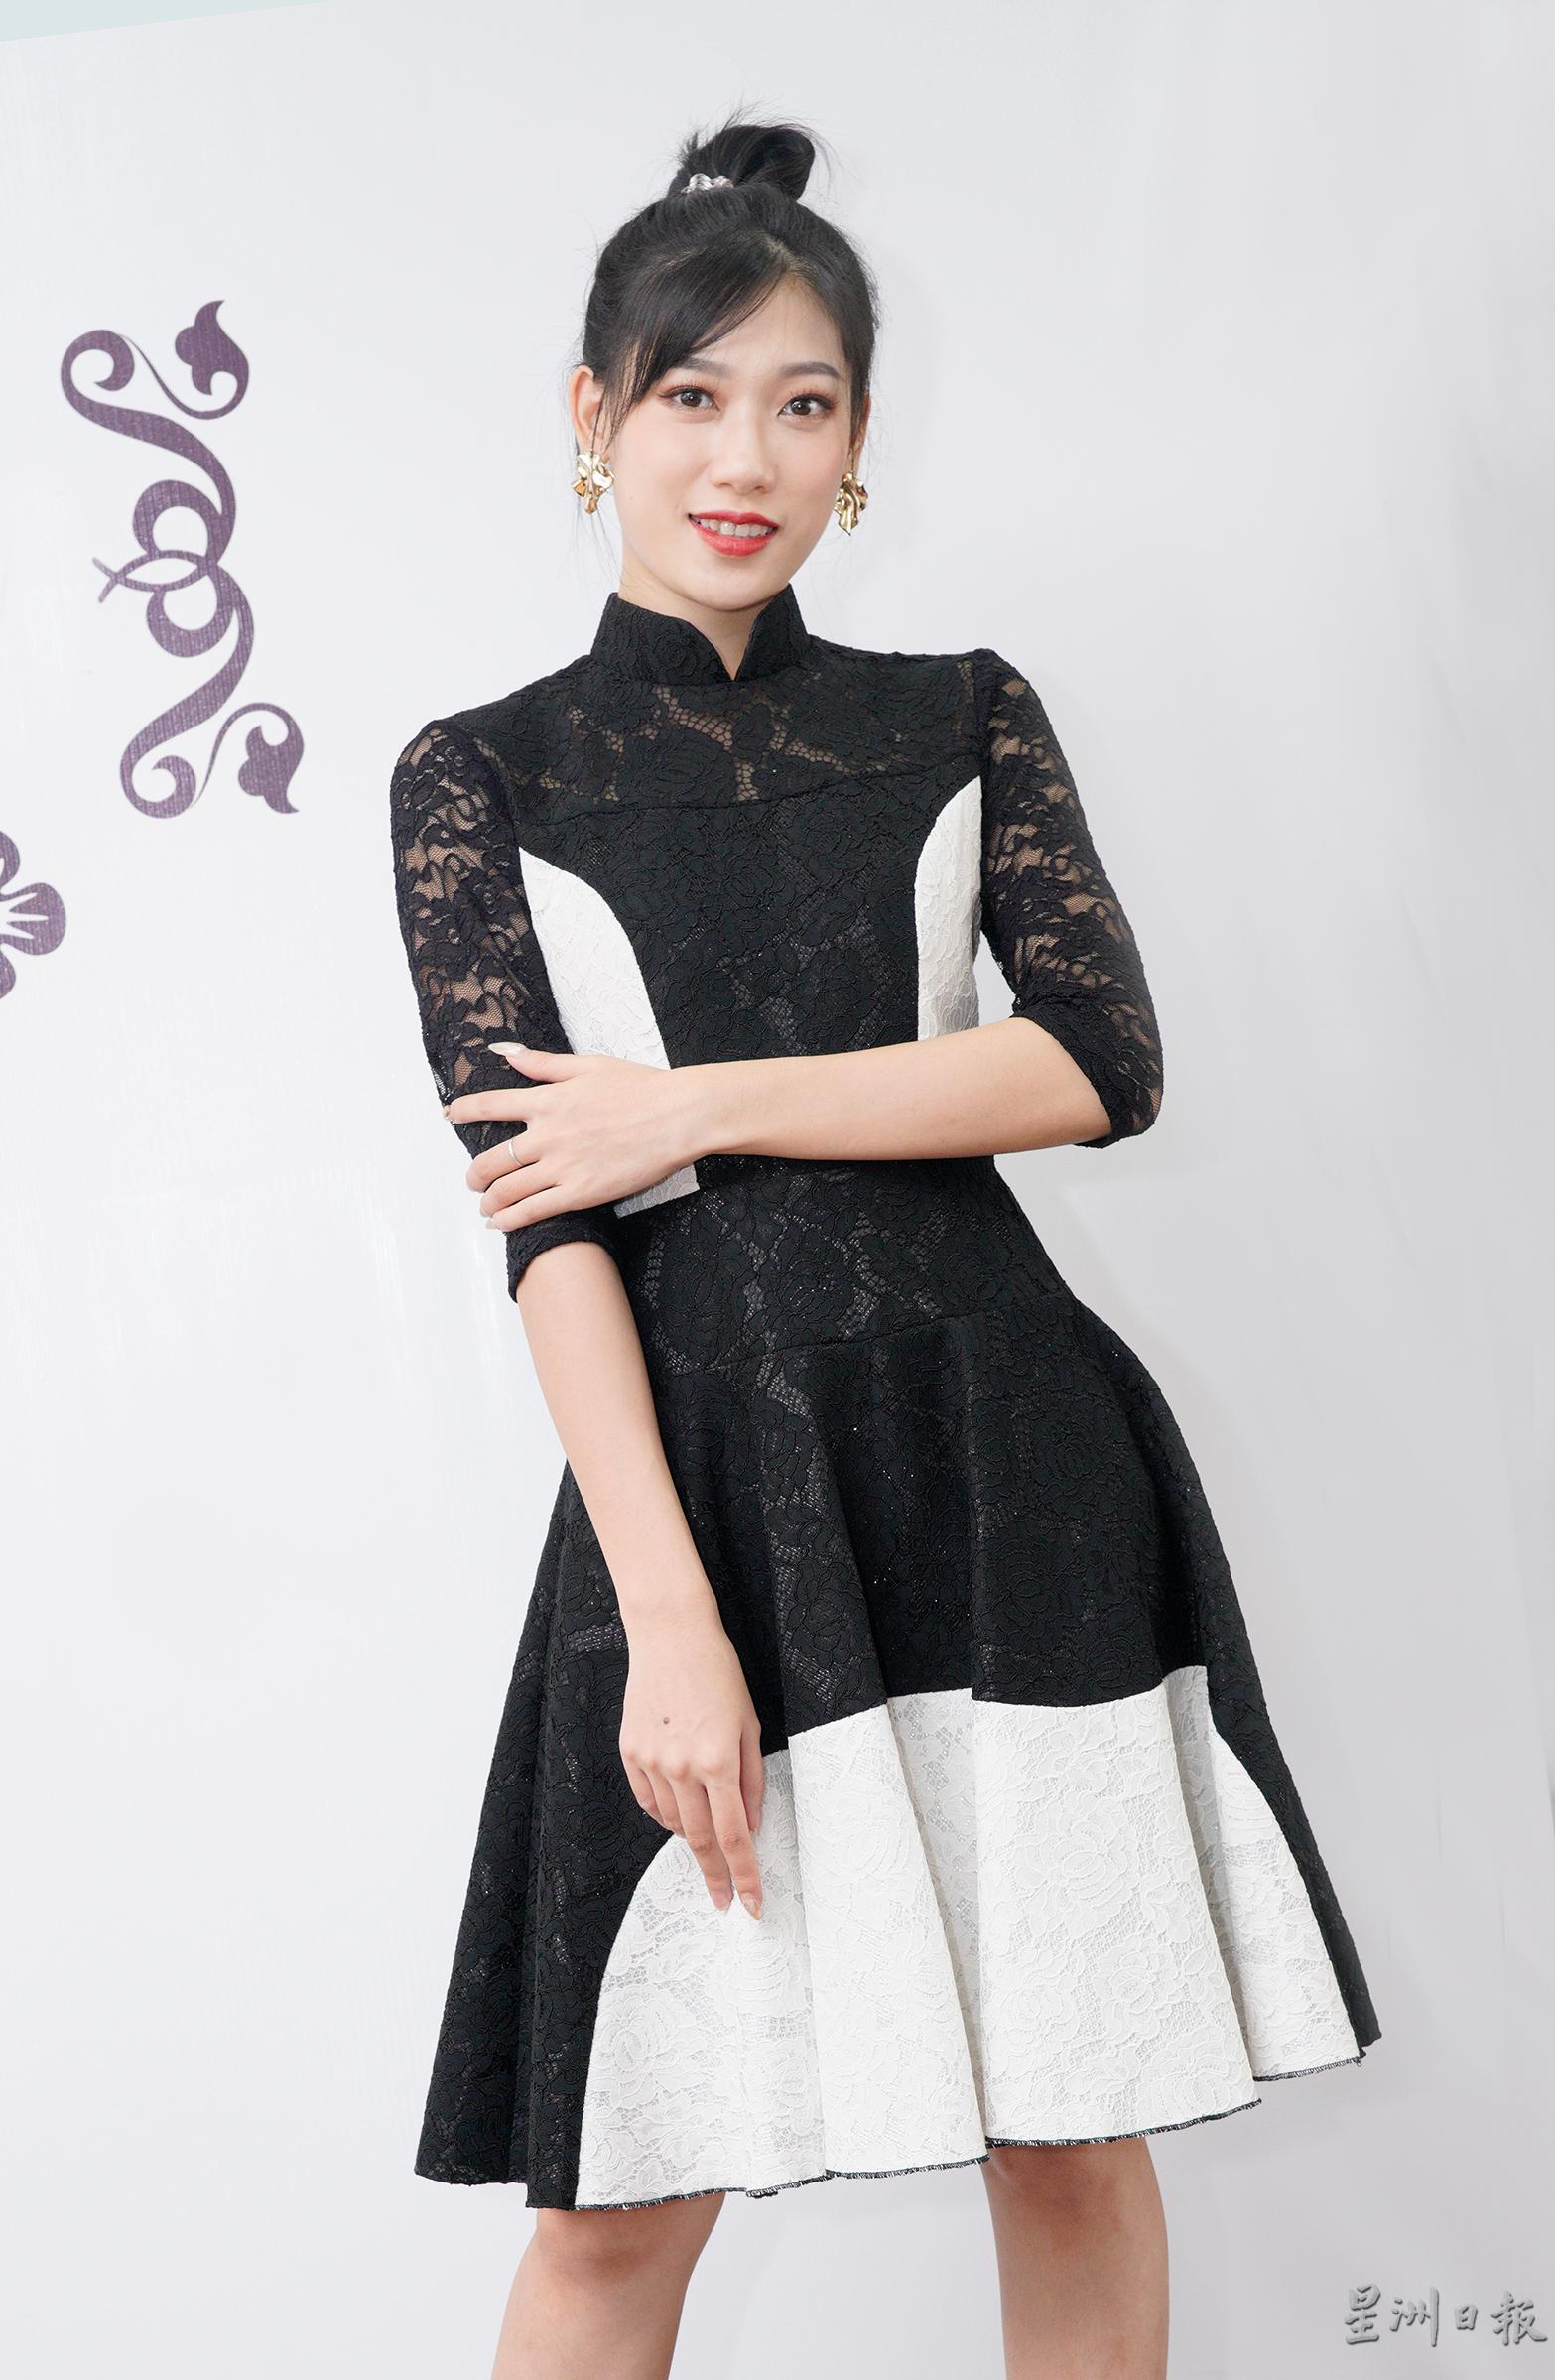 黑白色旗袍简洁明朗的风格，上半身是修身中袖的设计，下半身的伞裙式，再配以几何图案剪裁，增添时尚俏丽感。

